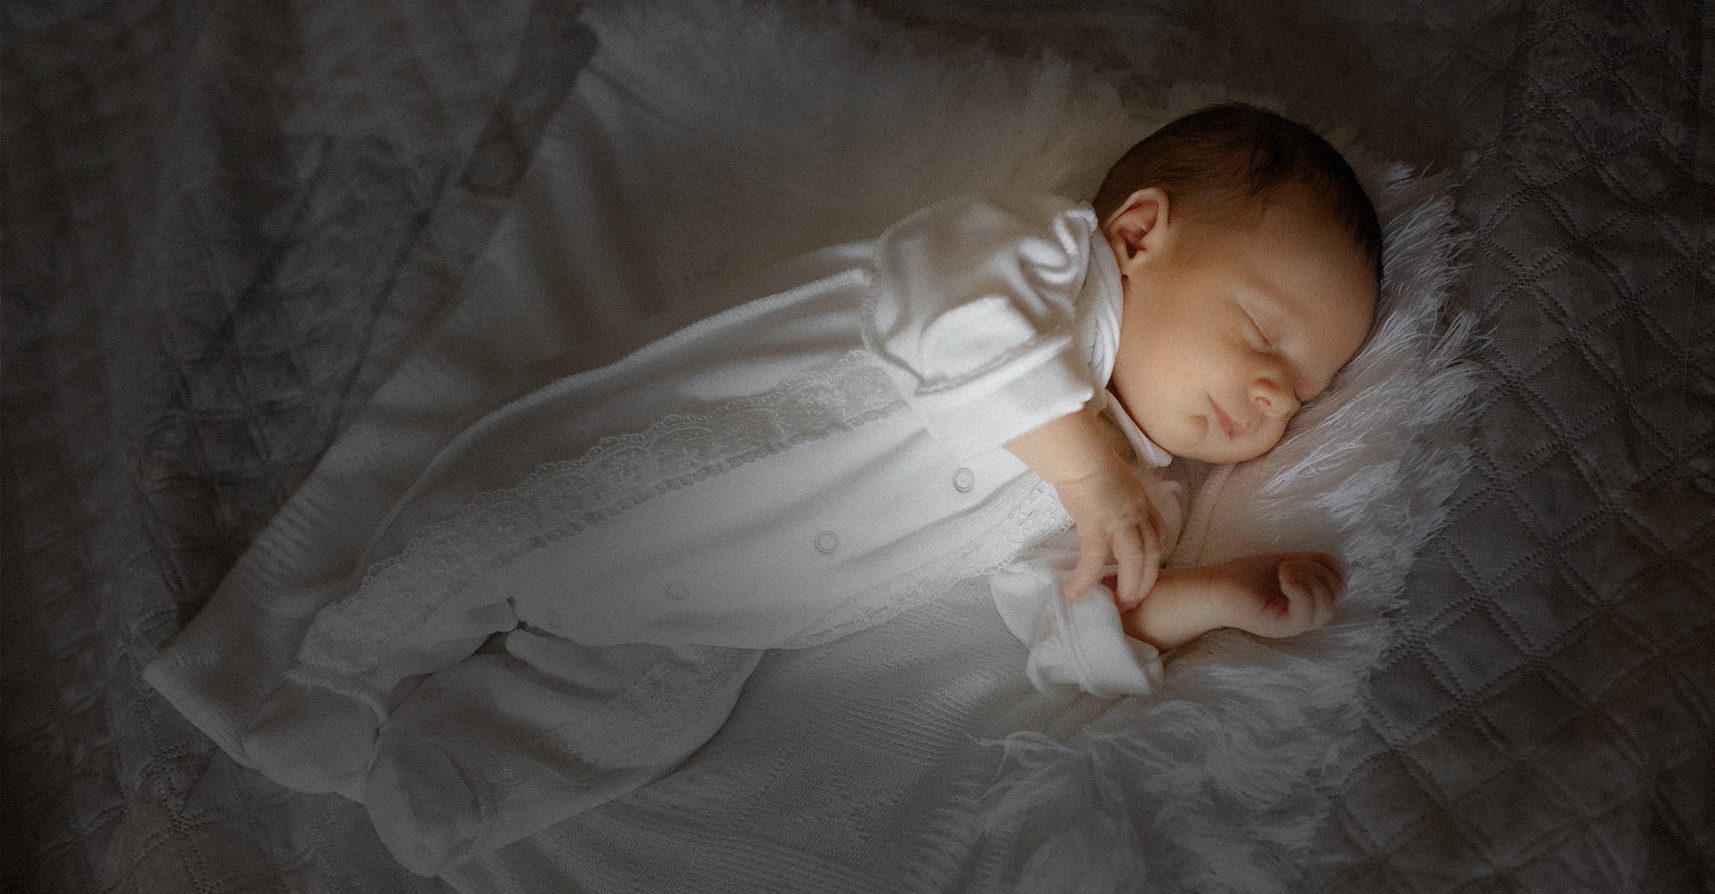 صورة رضيع ينام مرتاح البال بعد أن تأكد من فقدان والديه القدرة على النوم